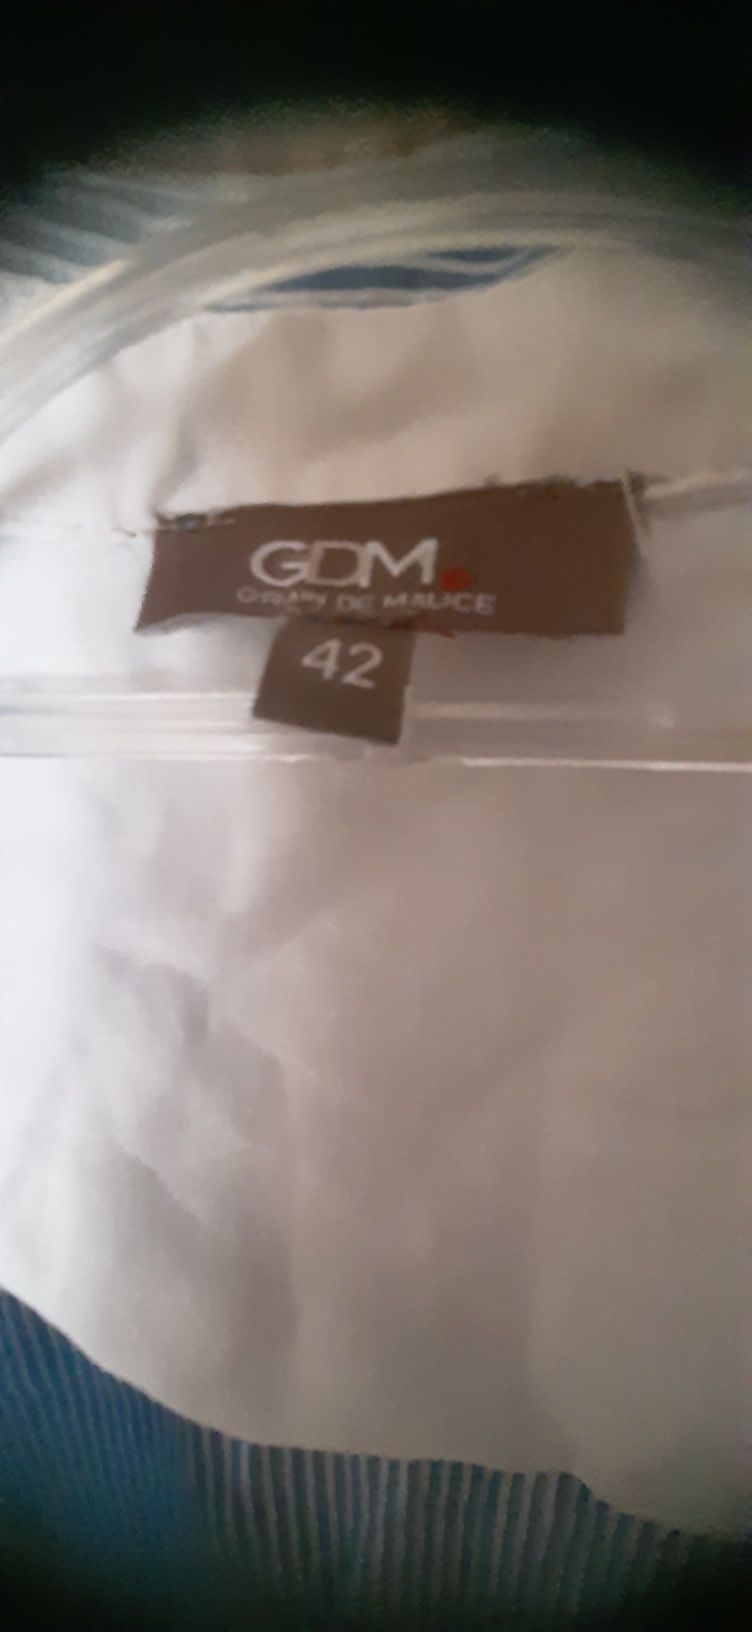 Bluzka damska koszulowa rozmiar 42 marki GDK.